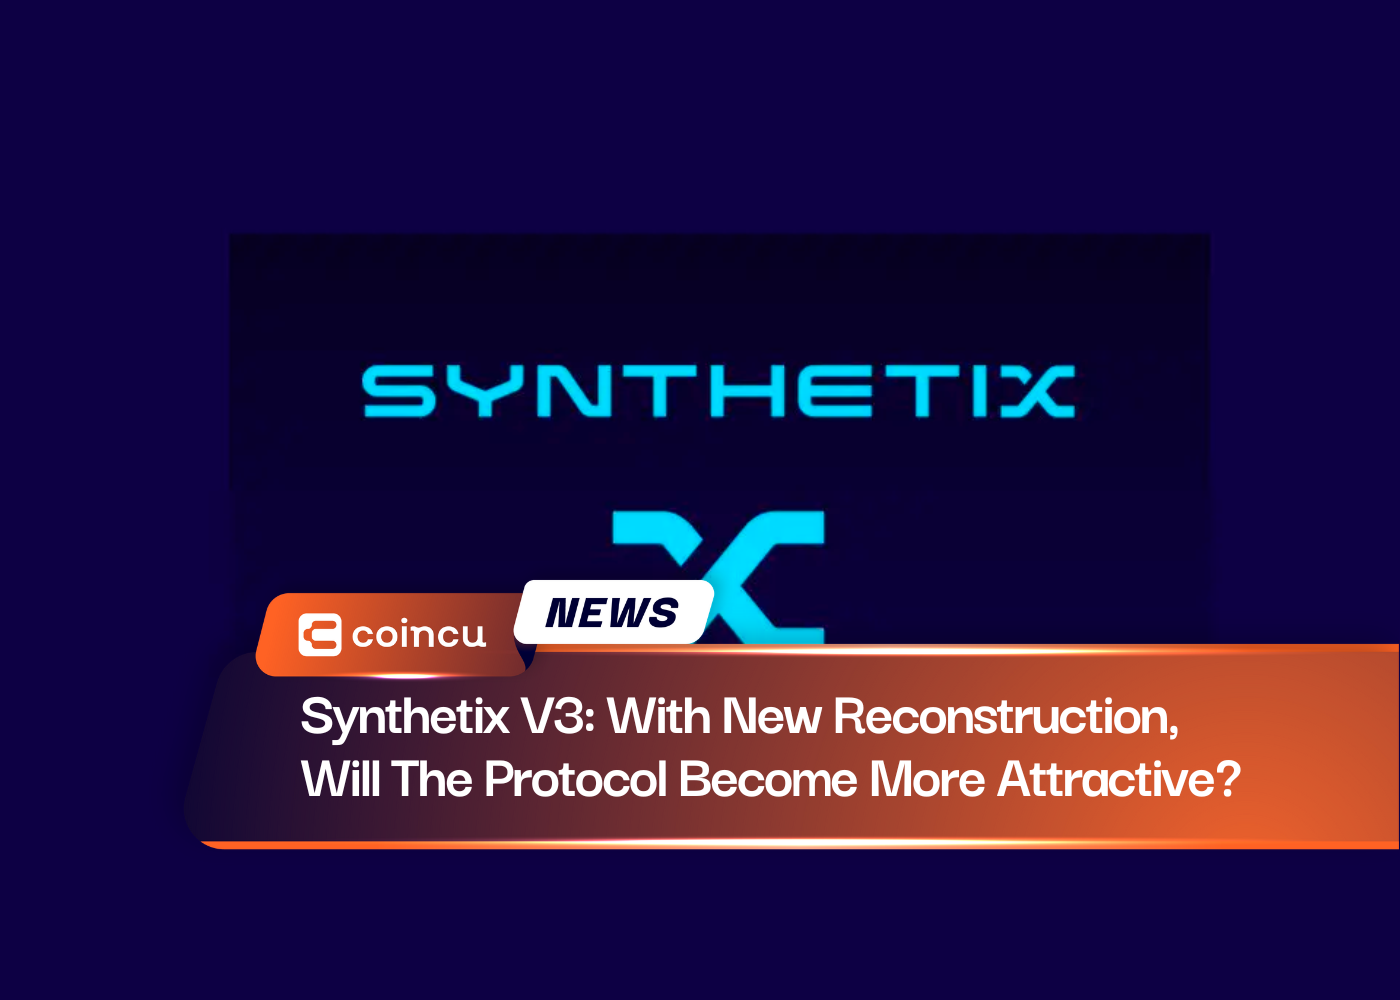 Synthetix V3: Wird das Protokoll mit der neuen Rekonstruktion attraktiver?